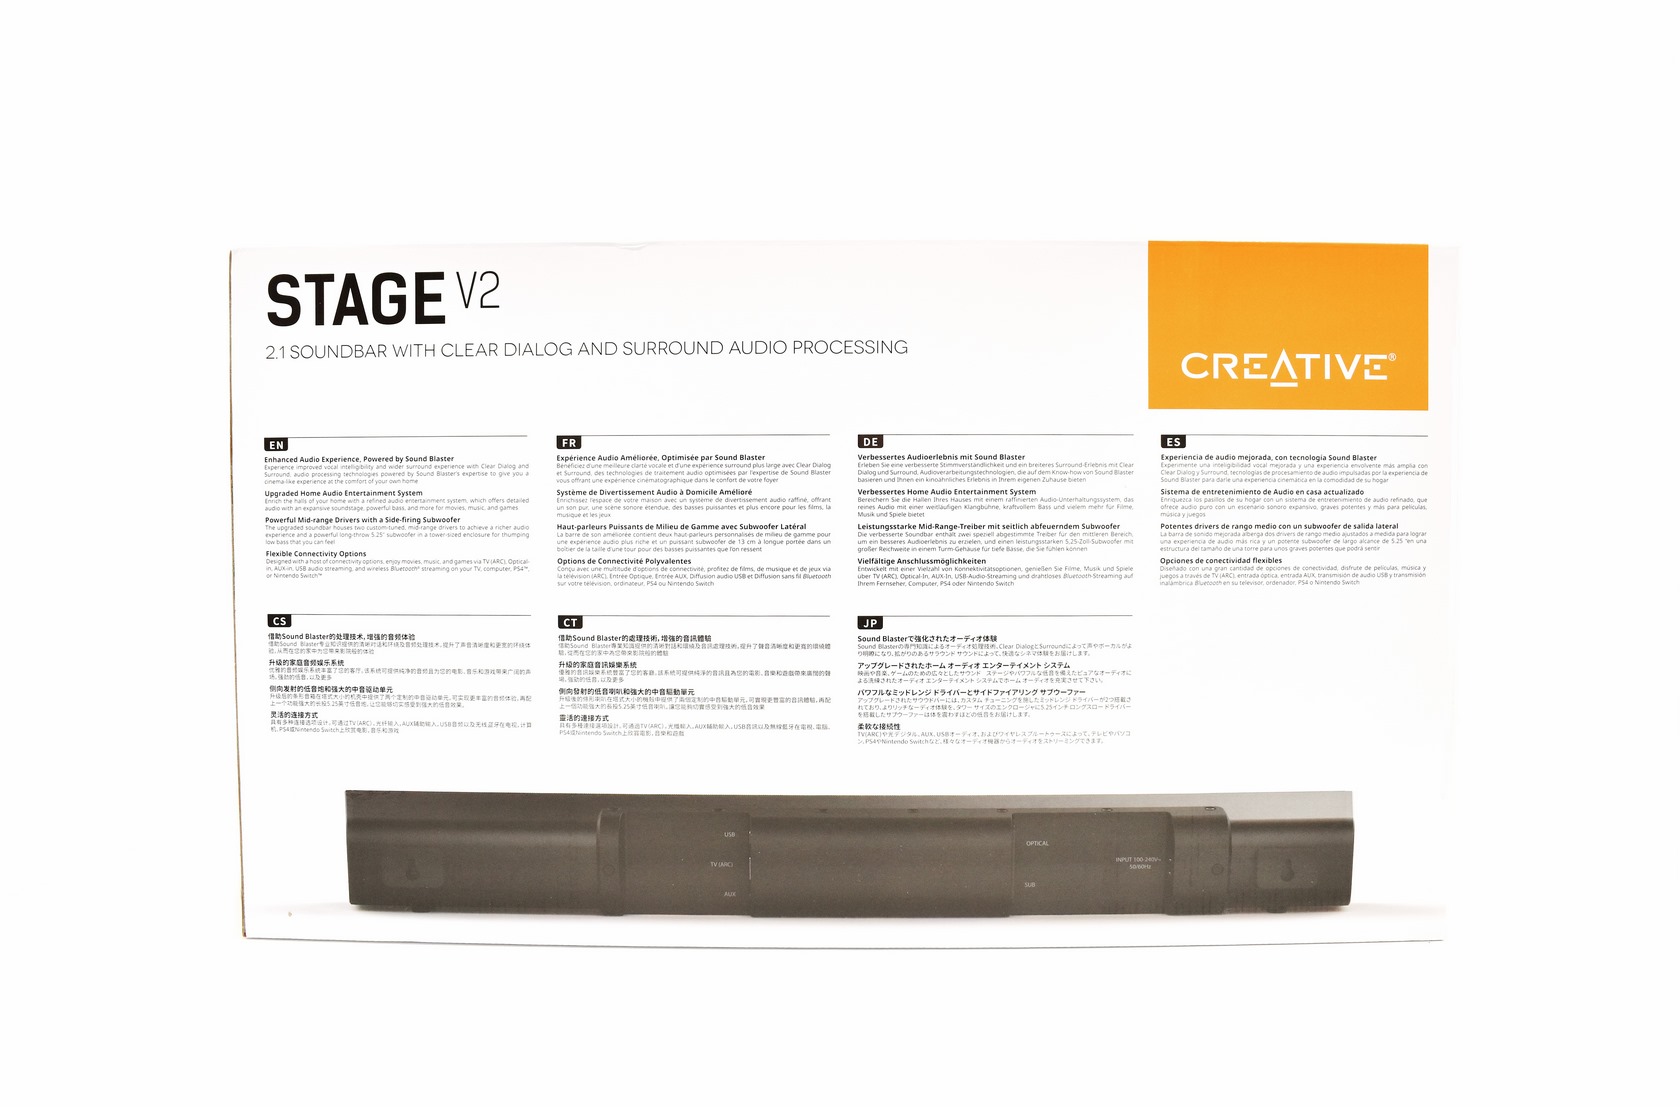 Soundbar V2 Creative Stage 2.1 Review